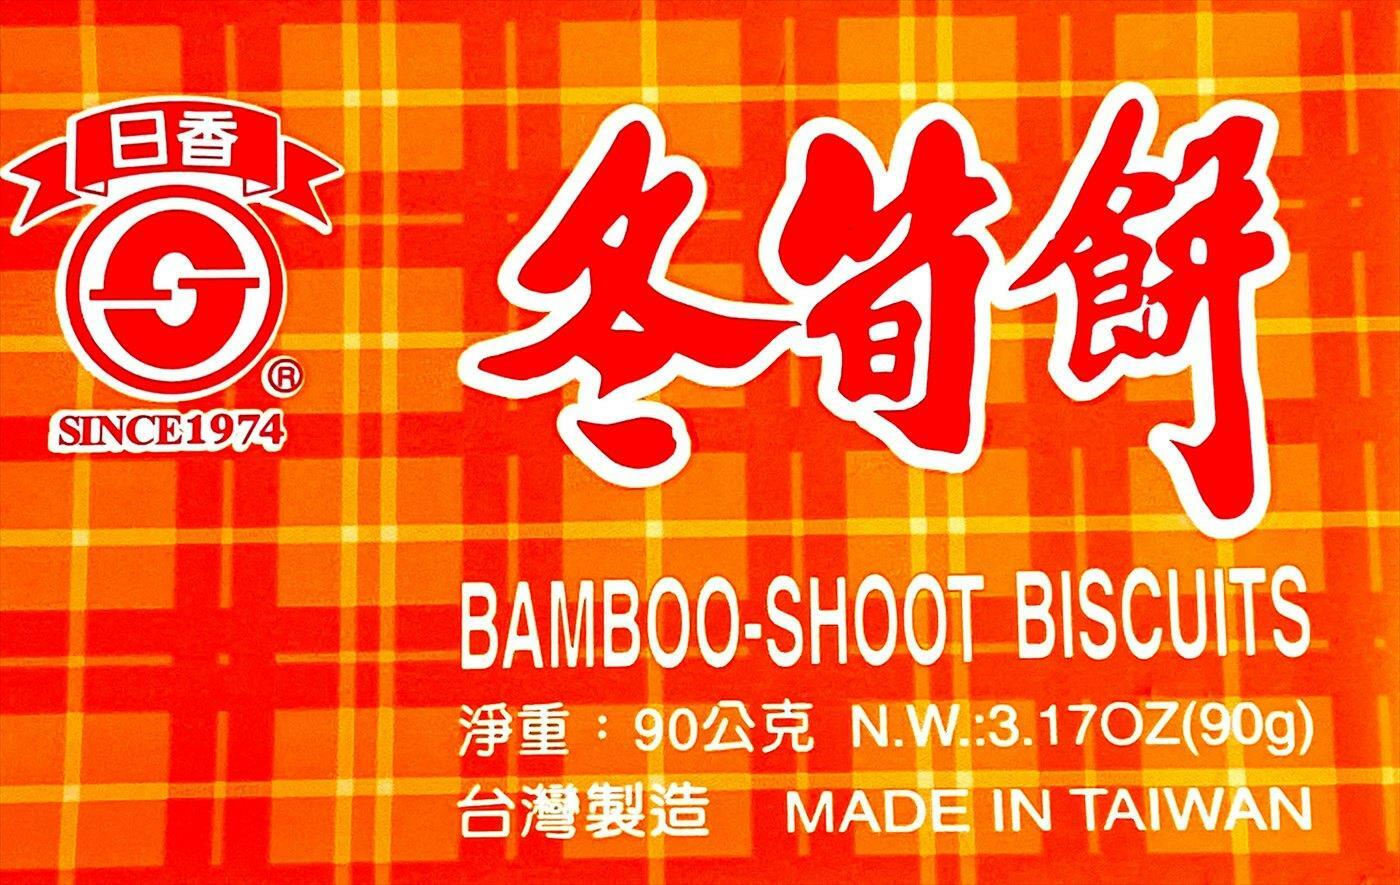 冬筍餅 - Bamboo Shoot Biscuits